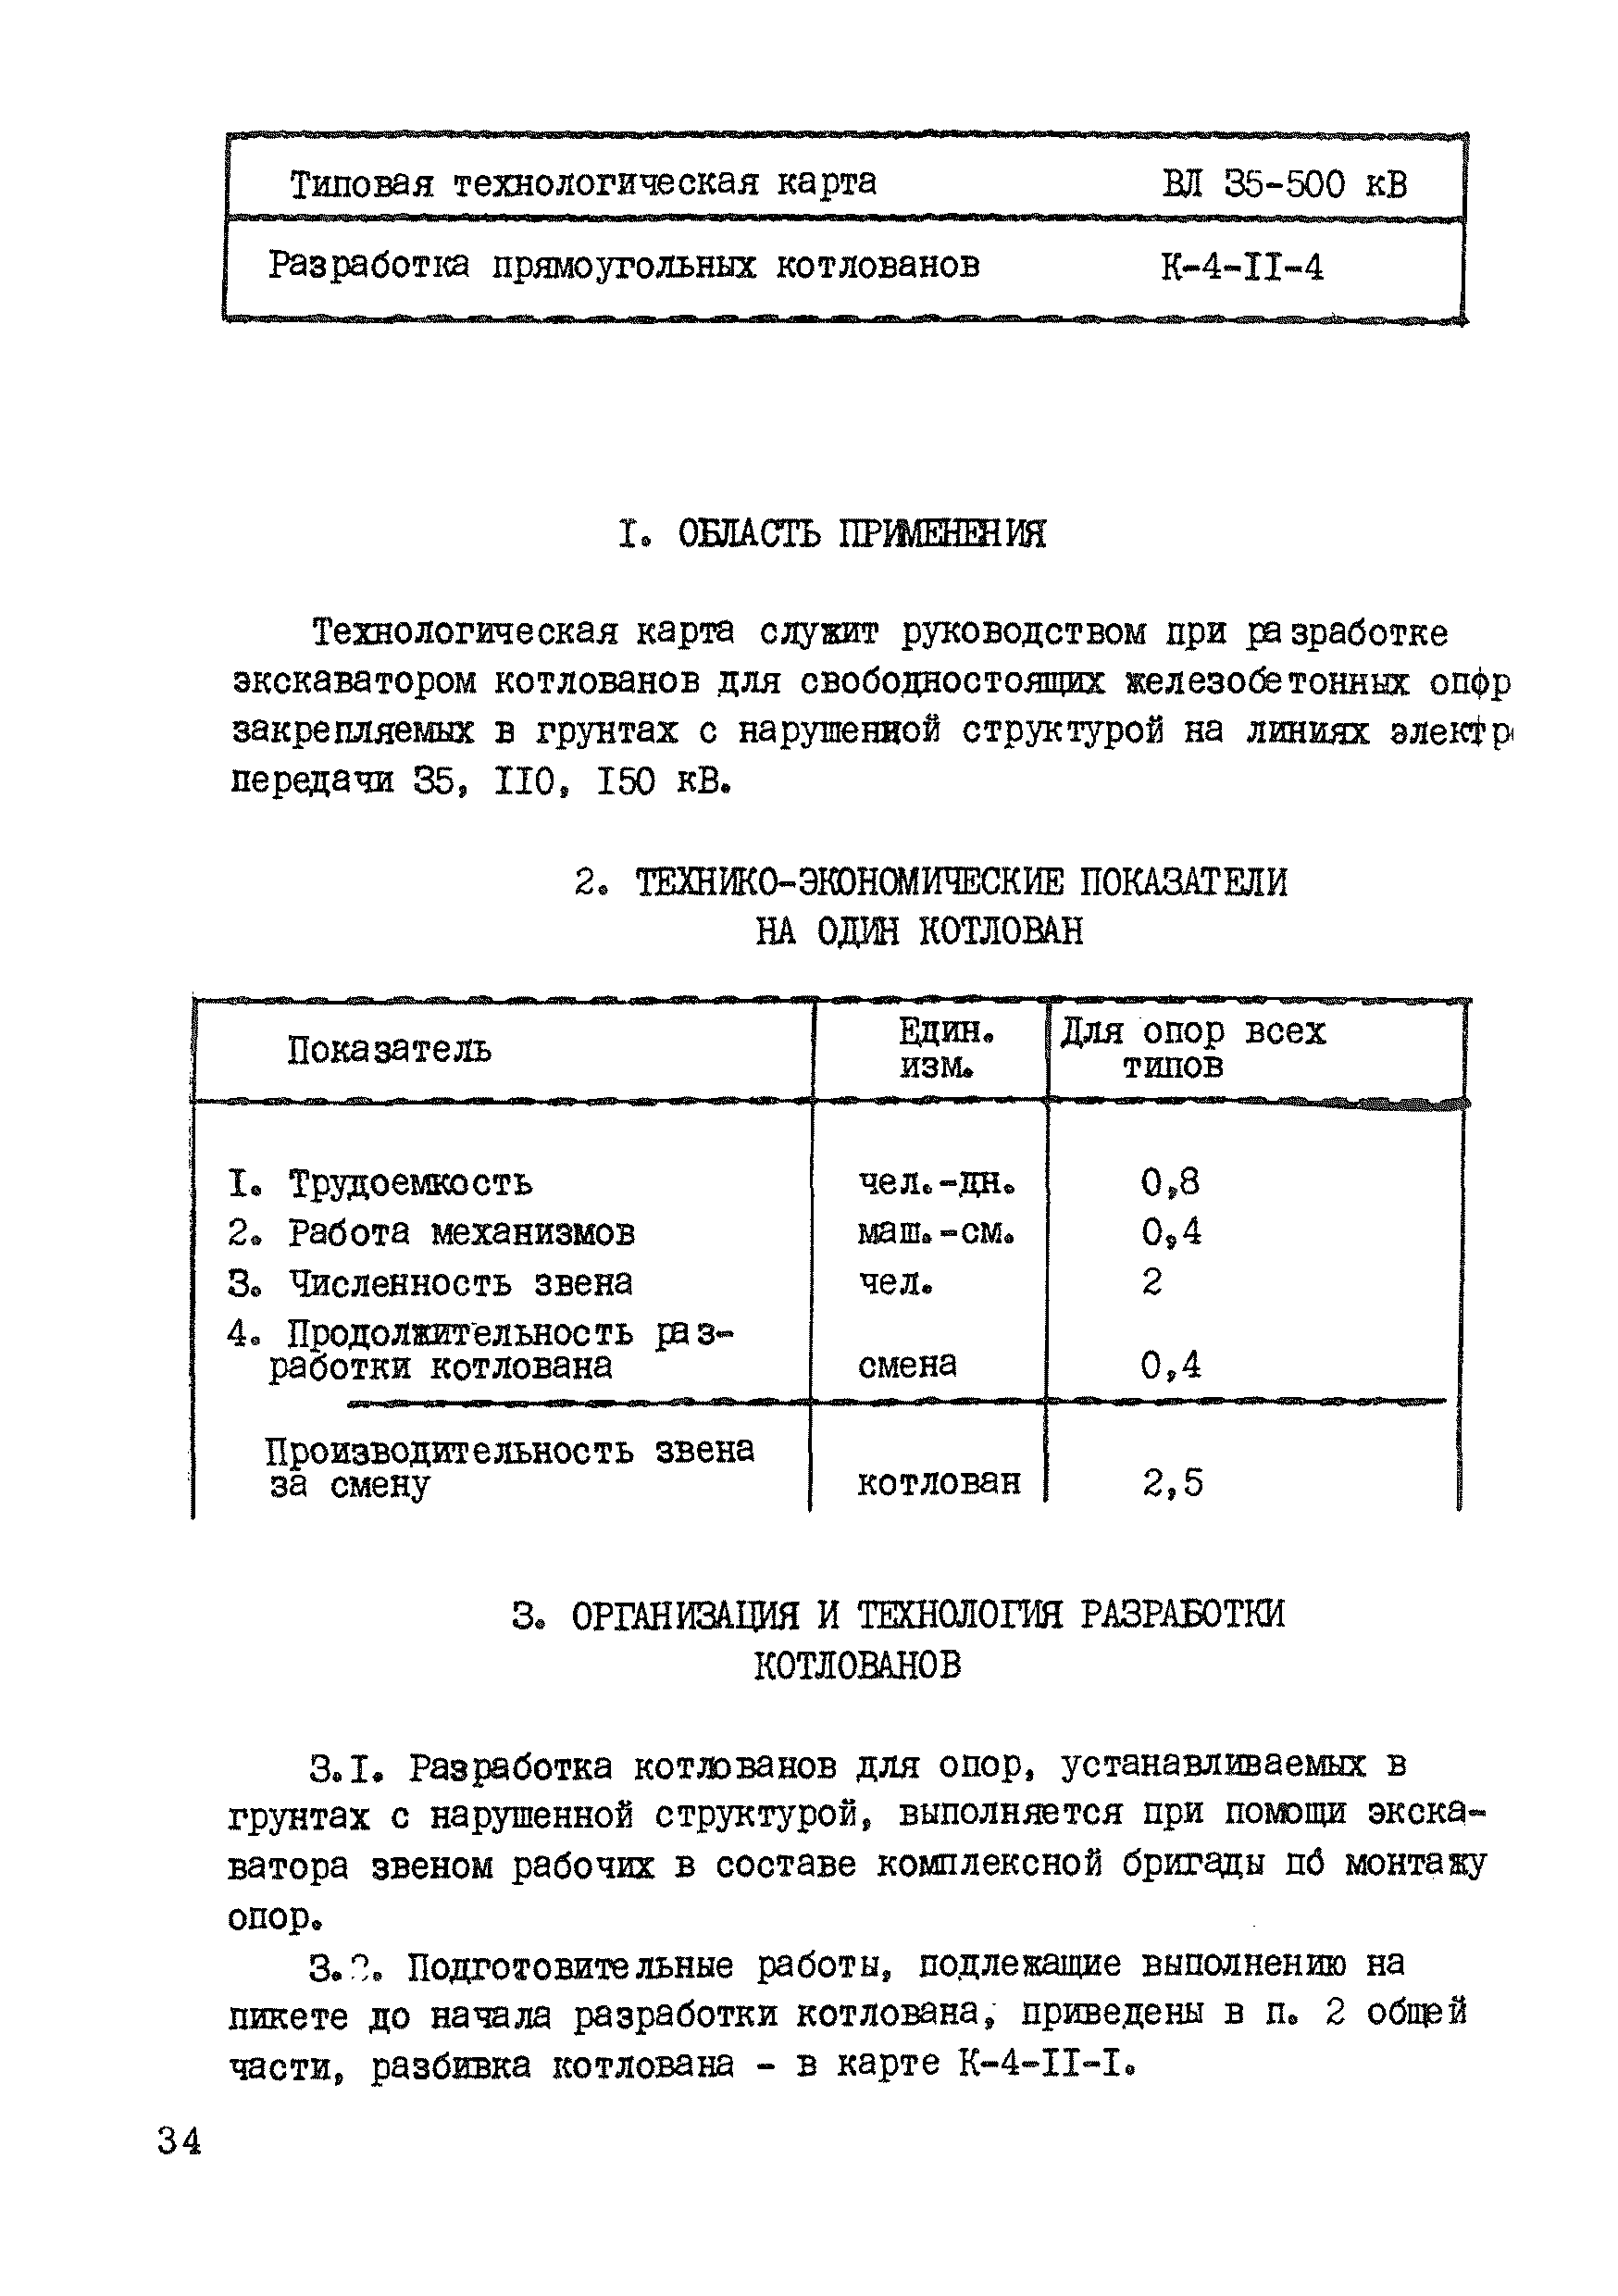 ТТК К-4-11-4